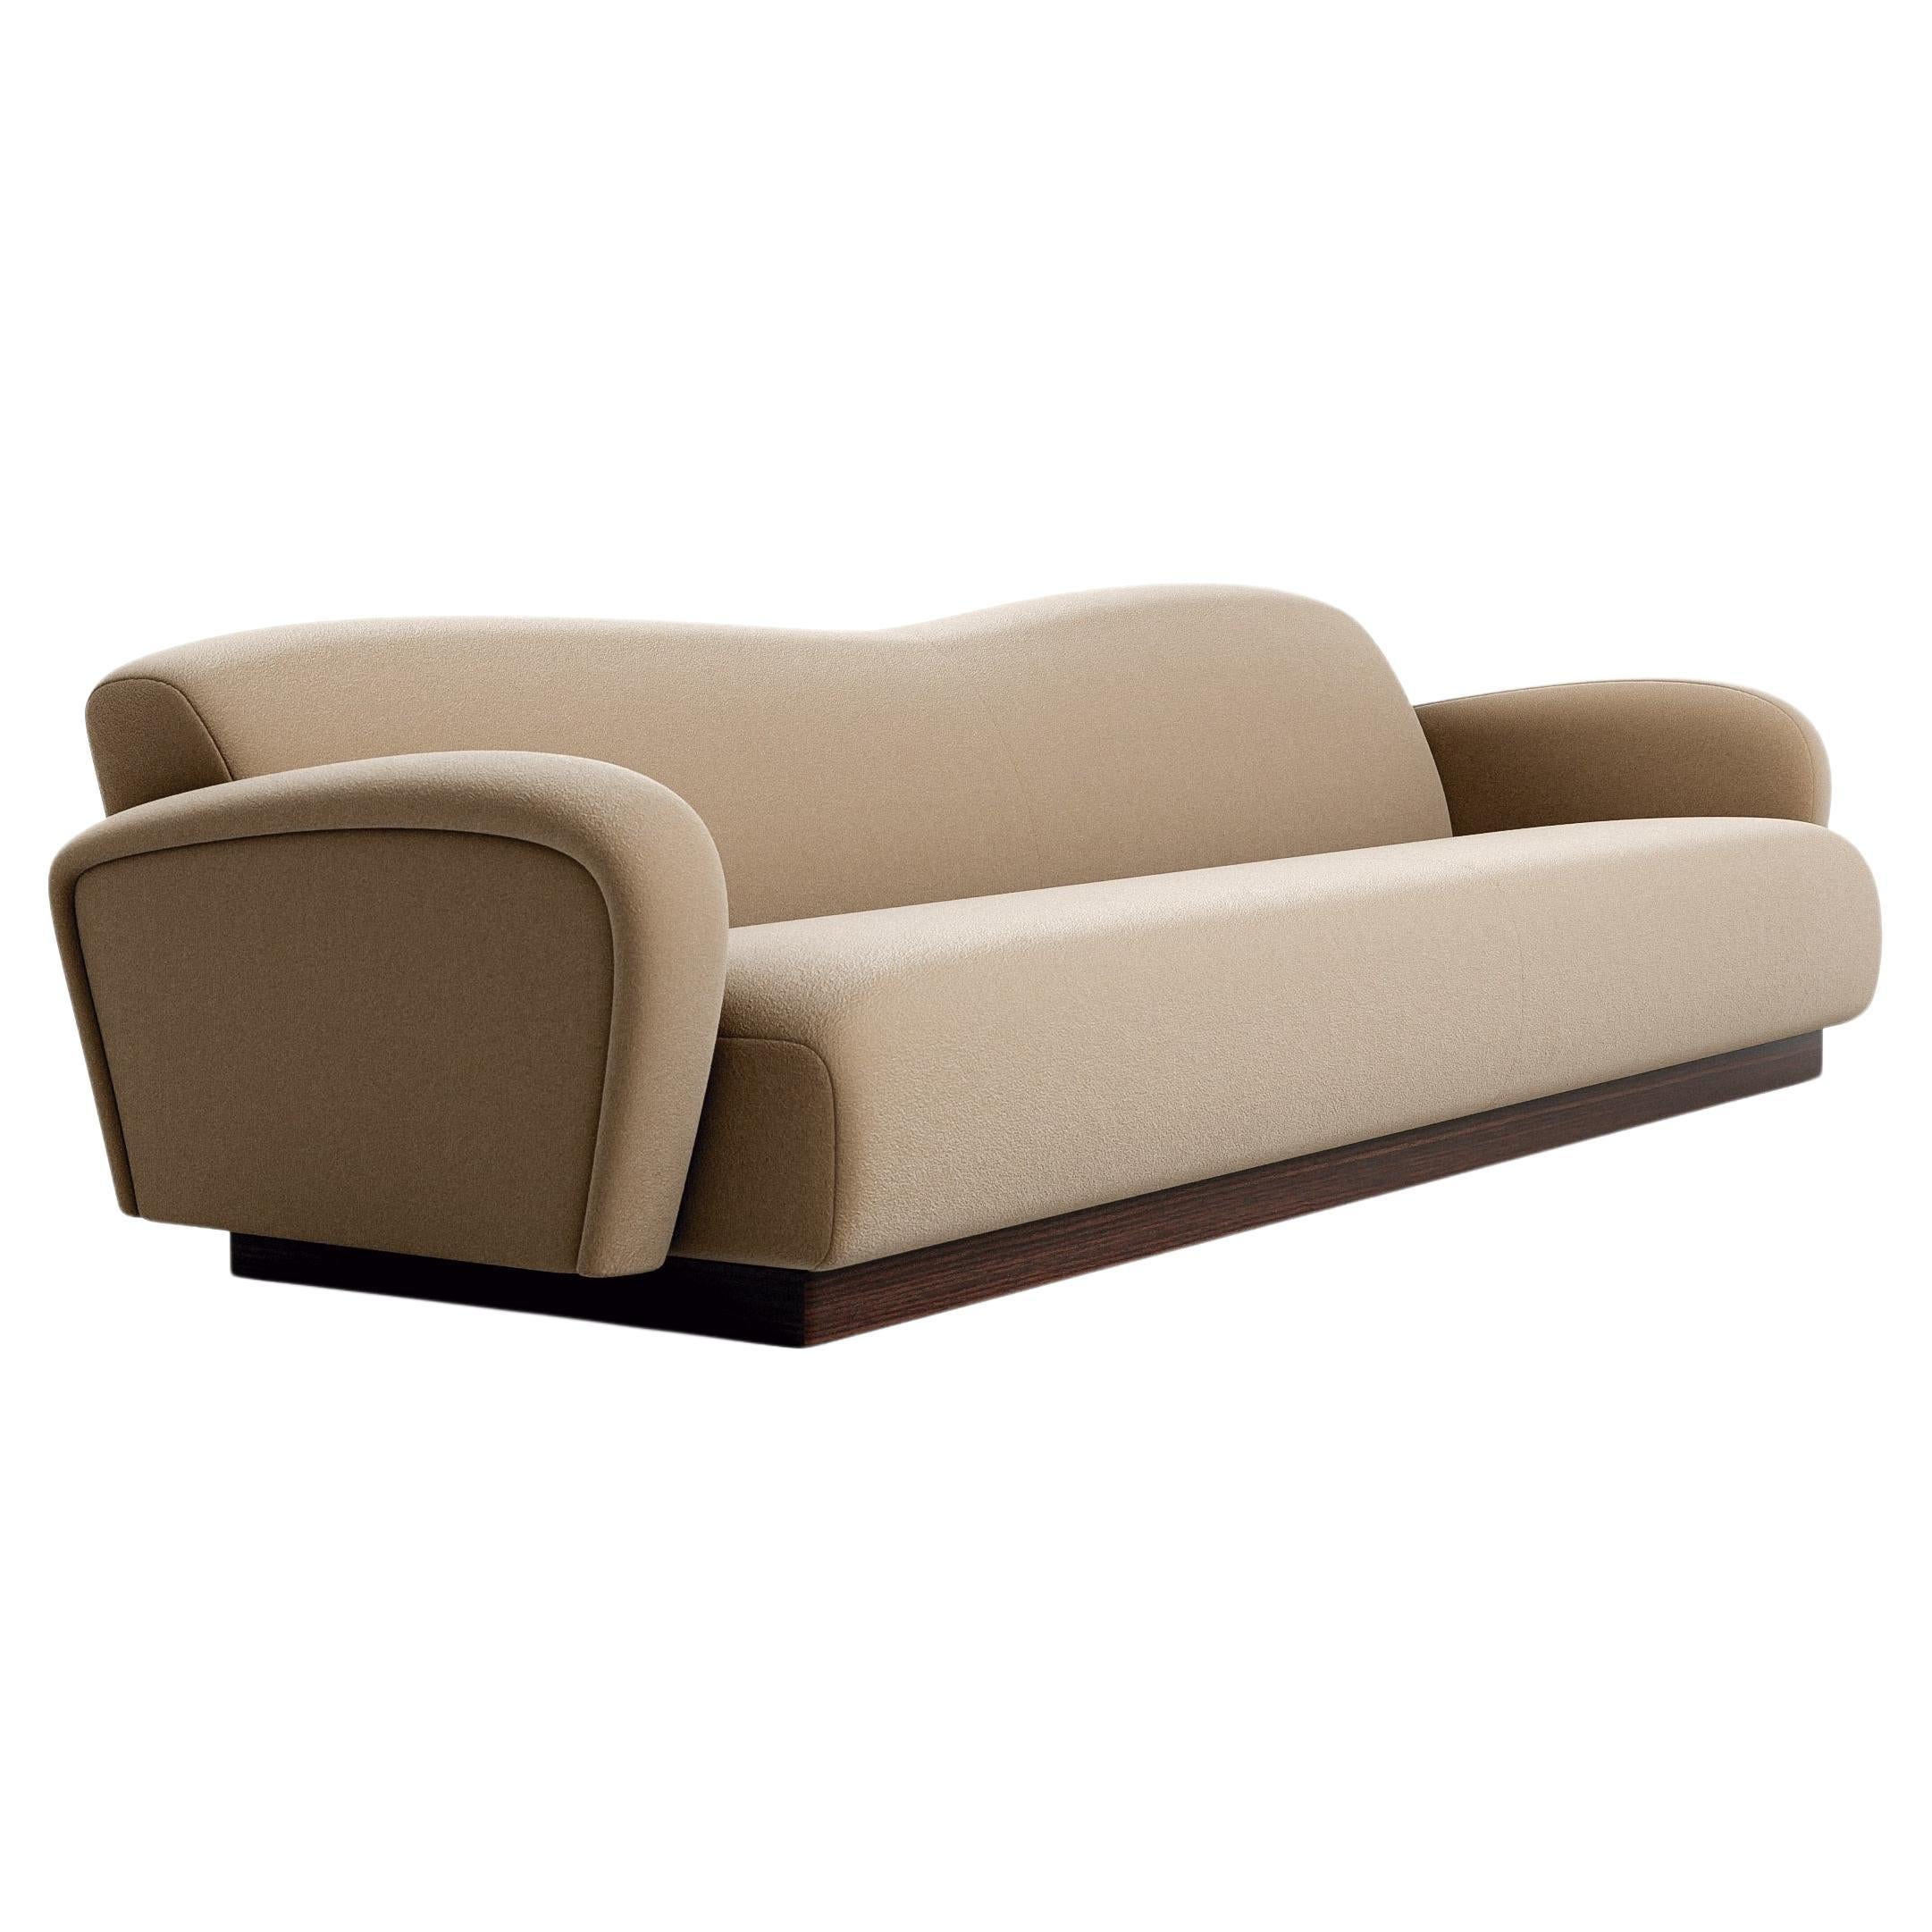 Midcentury Modern Style Sofa In Velvet And Walnut Base